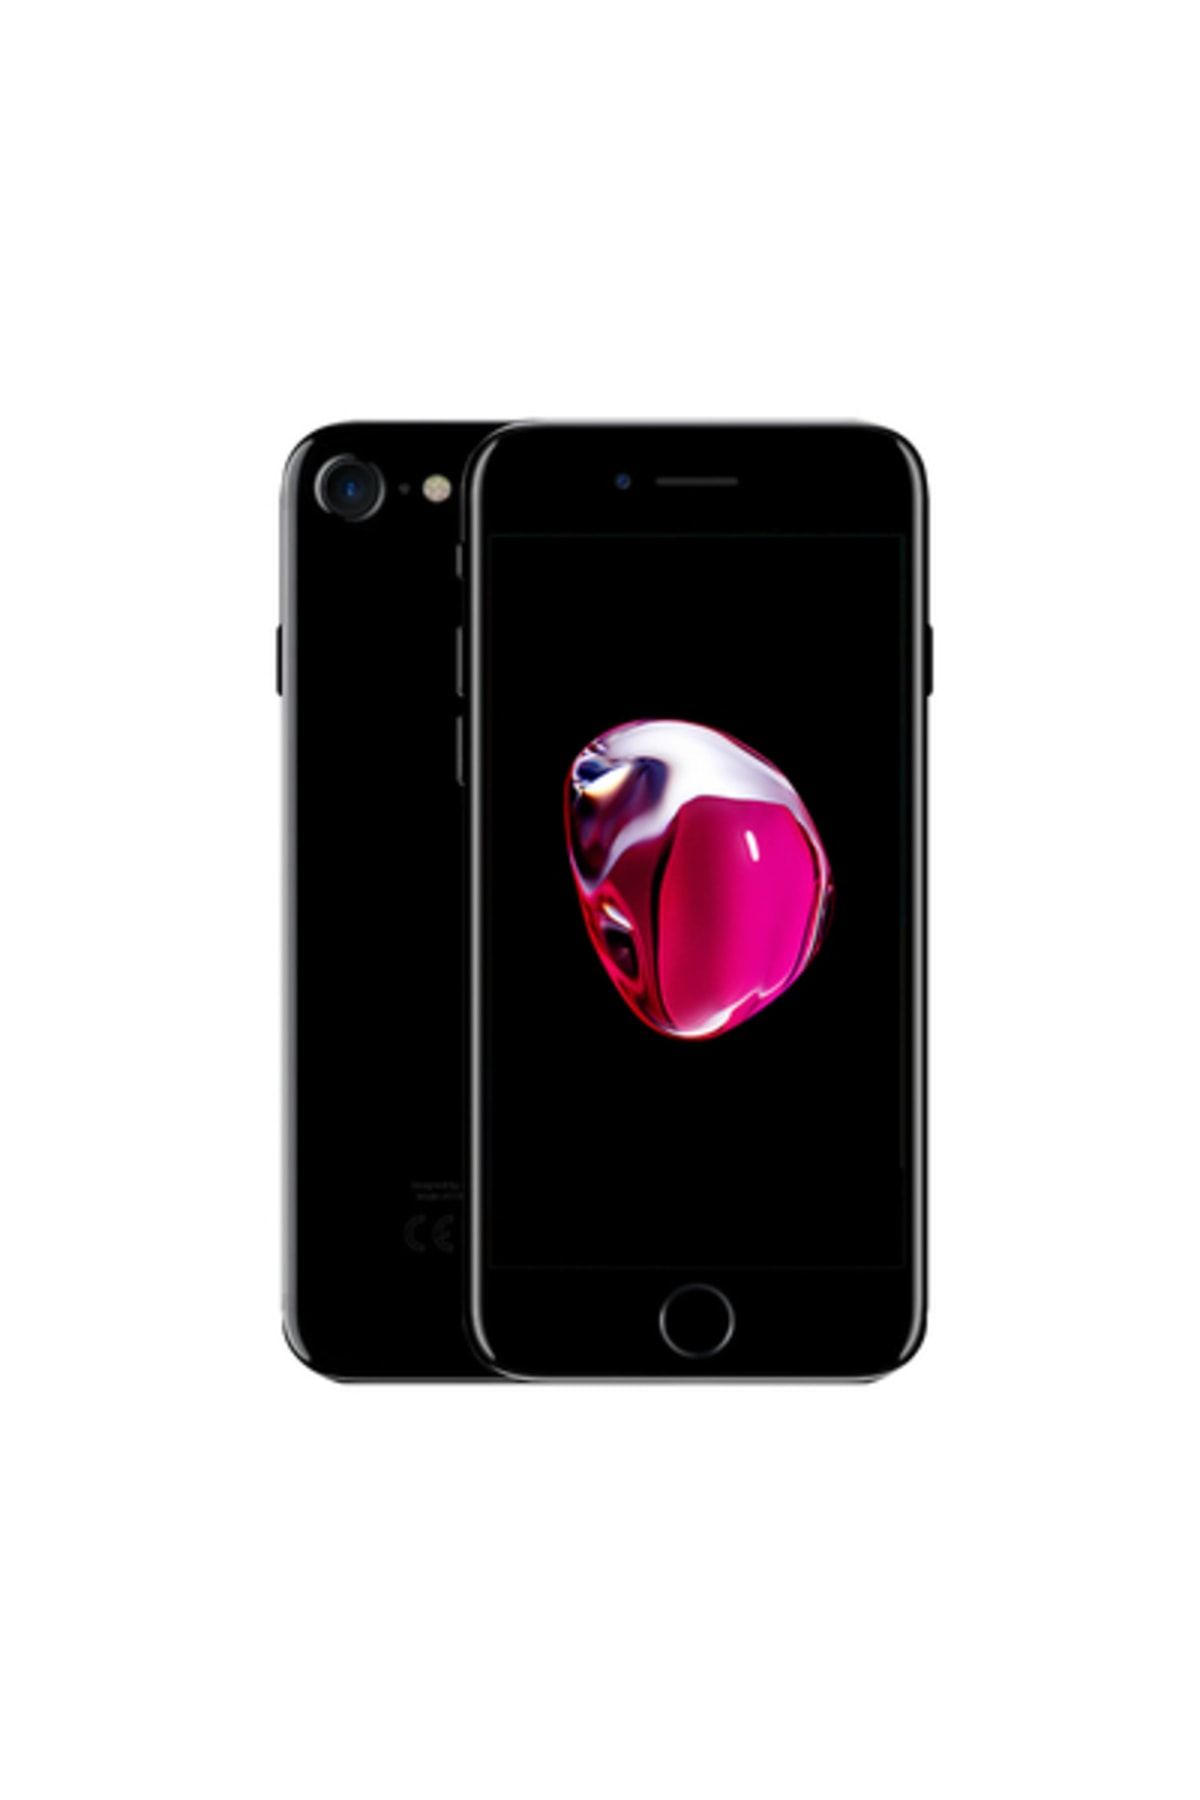 Apple Yenilenmiş iPhone 7 128 GB Jet Siyahı Cep Telefonu (12 Ay Garantili) - B Kalite